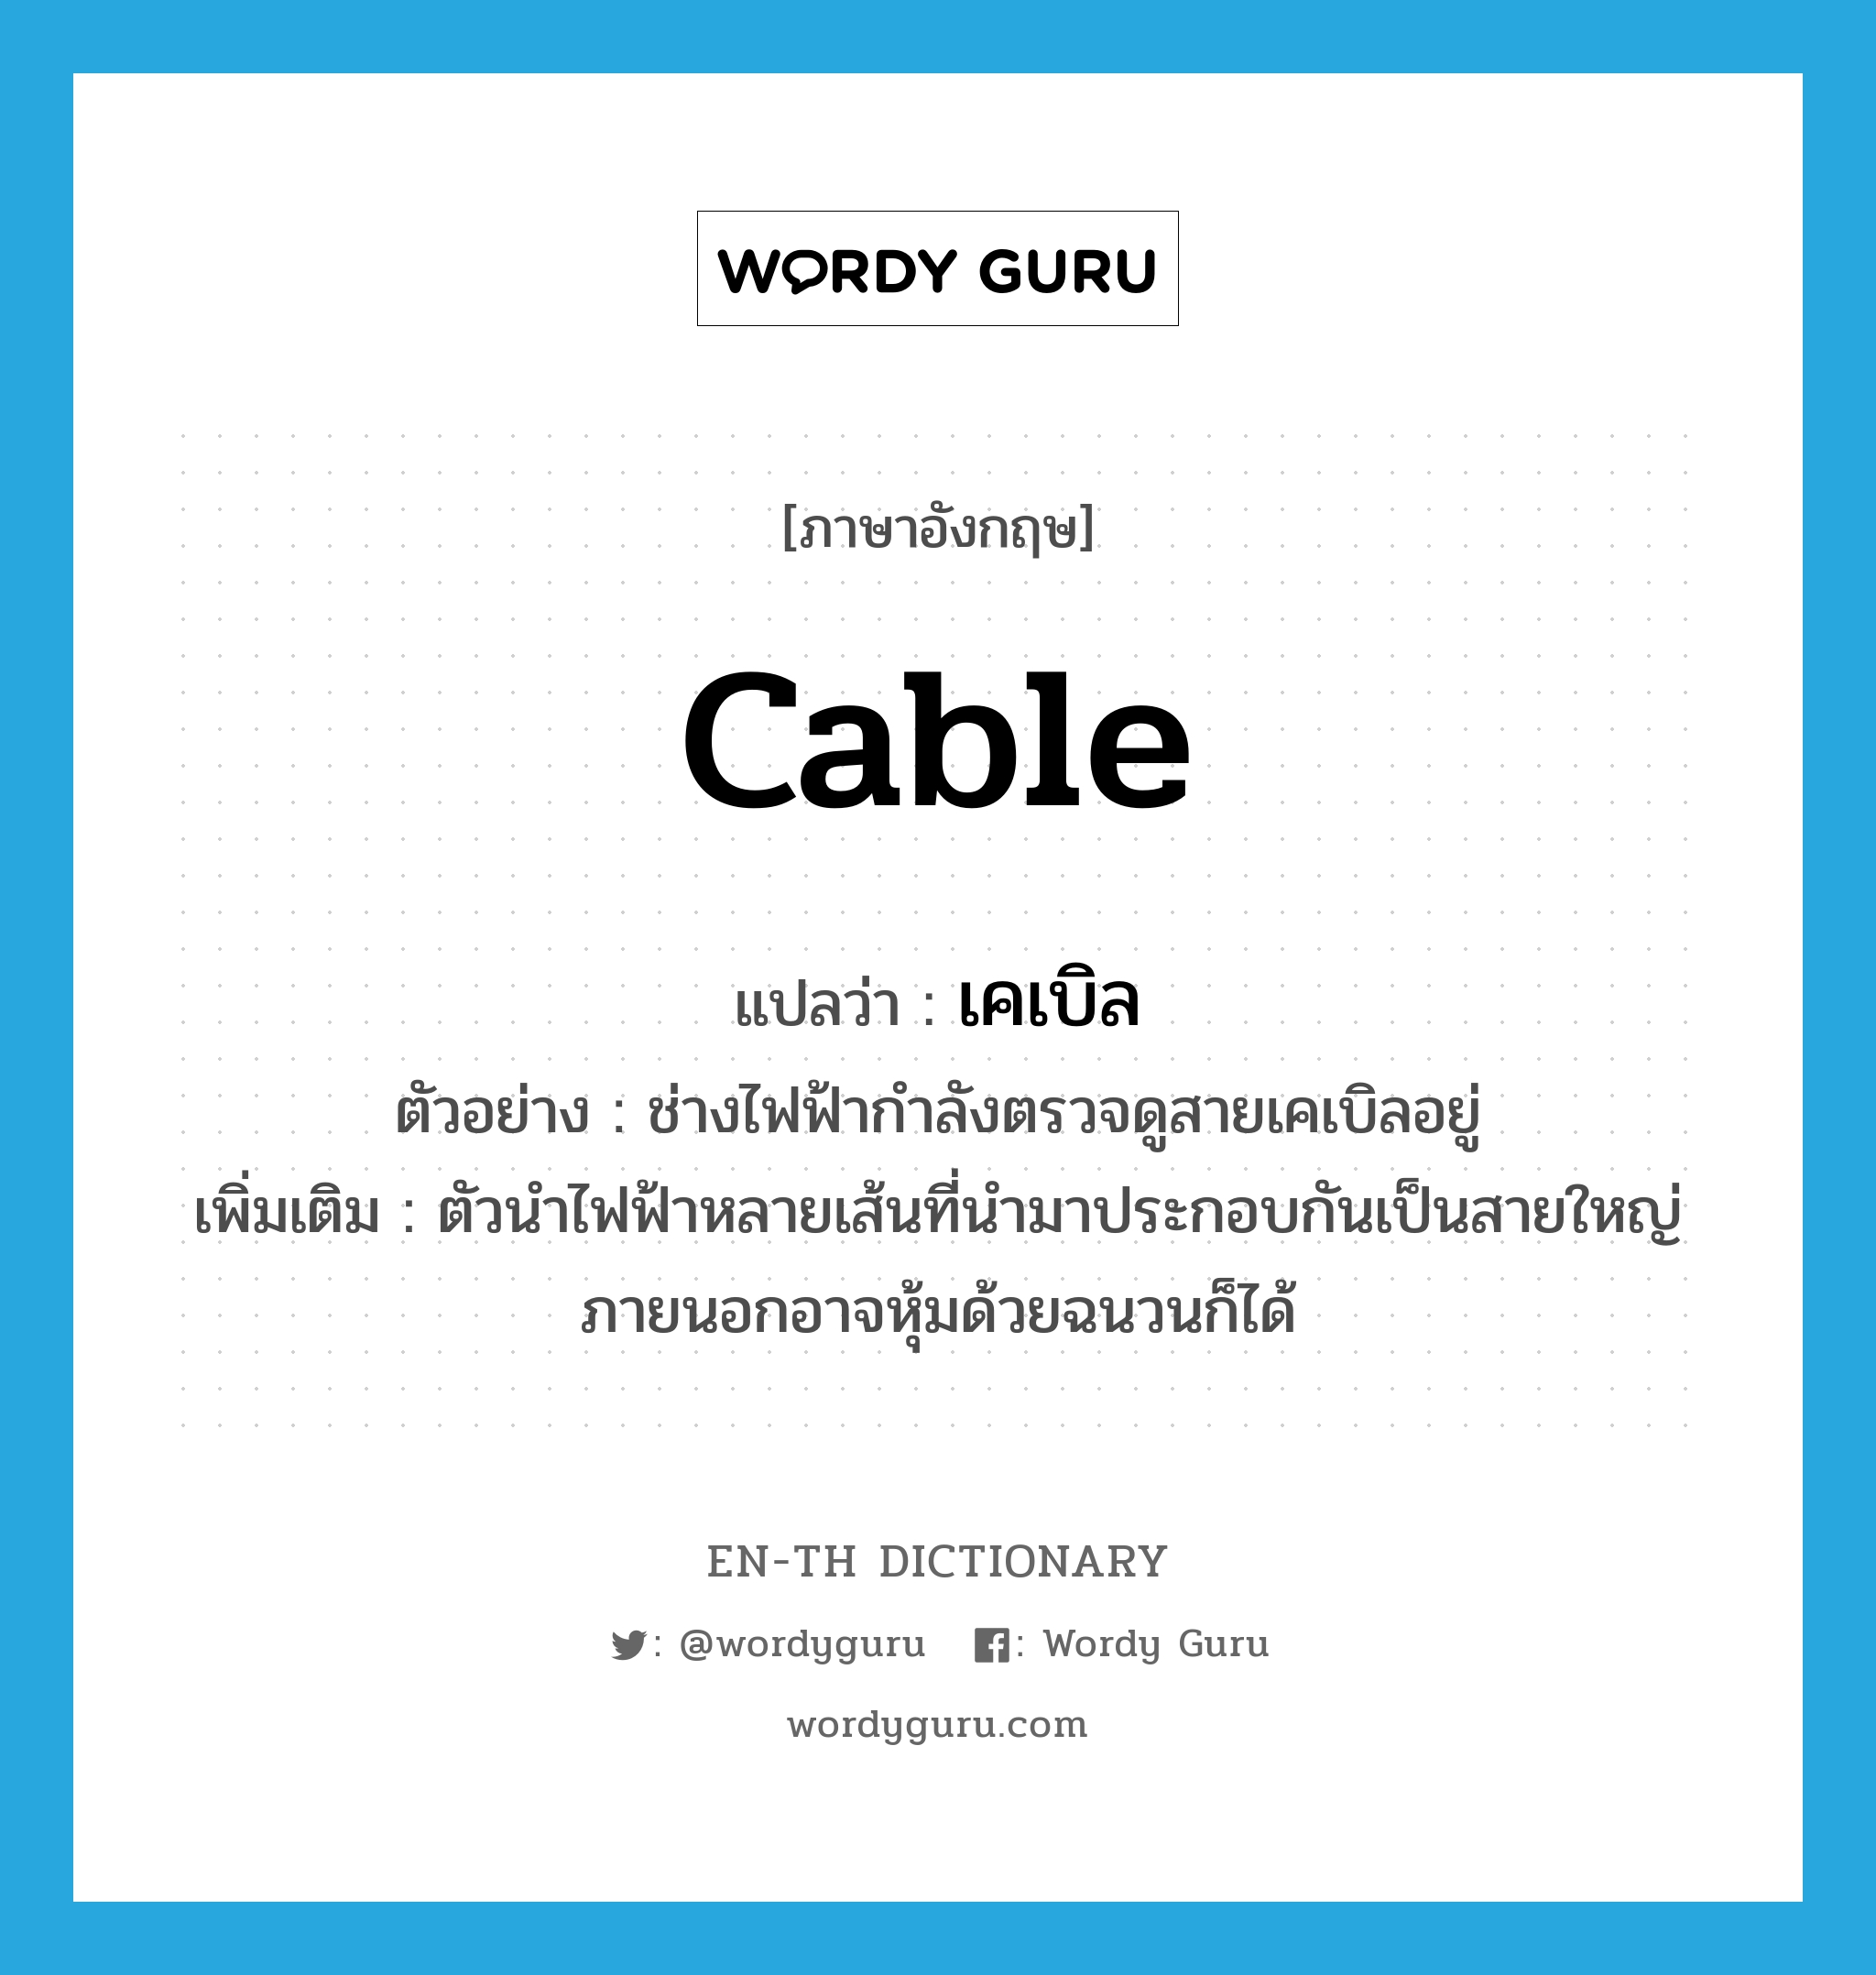 cable แปลว่า?, คำศัพท์ภาษาอังกฤษ cable แปลว่า เคเบิล ประเภท N ตัวอย่าง ช่างไฟฟ้ากำลังตรวจดูสายเคเบิลอยู่ เพิ่มเติม ตัวนำไฟฟ้าหลายเส้นที่นำมาประกอบกันเป็นสายใหญ่ ภายนอกอาจหุ้มด้วยฉนวนก็ได้ หมวด N